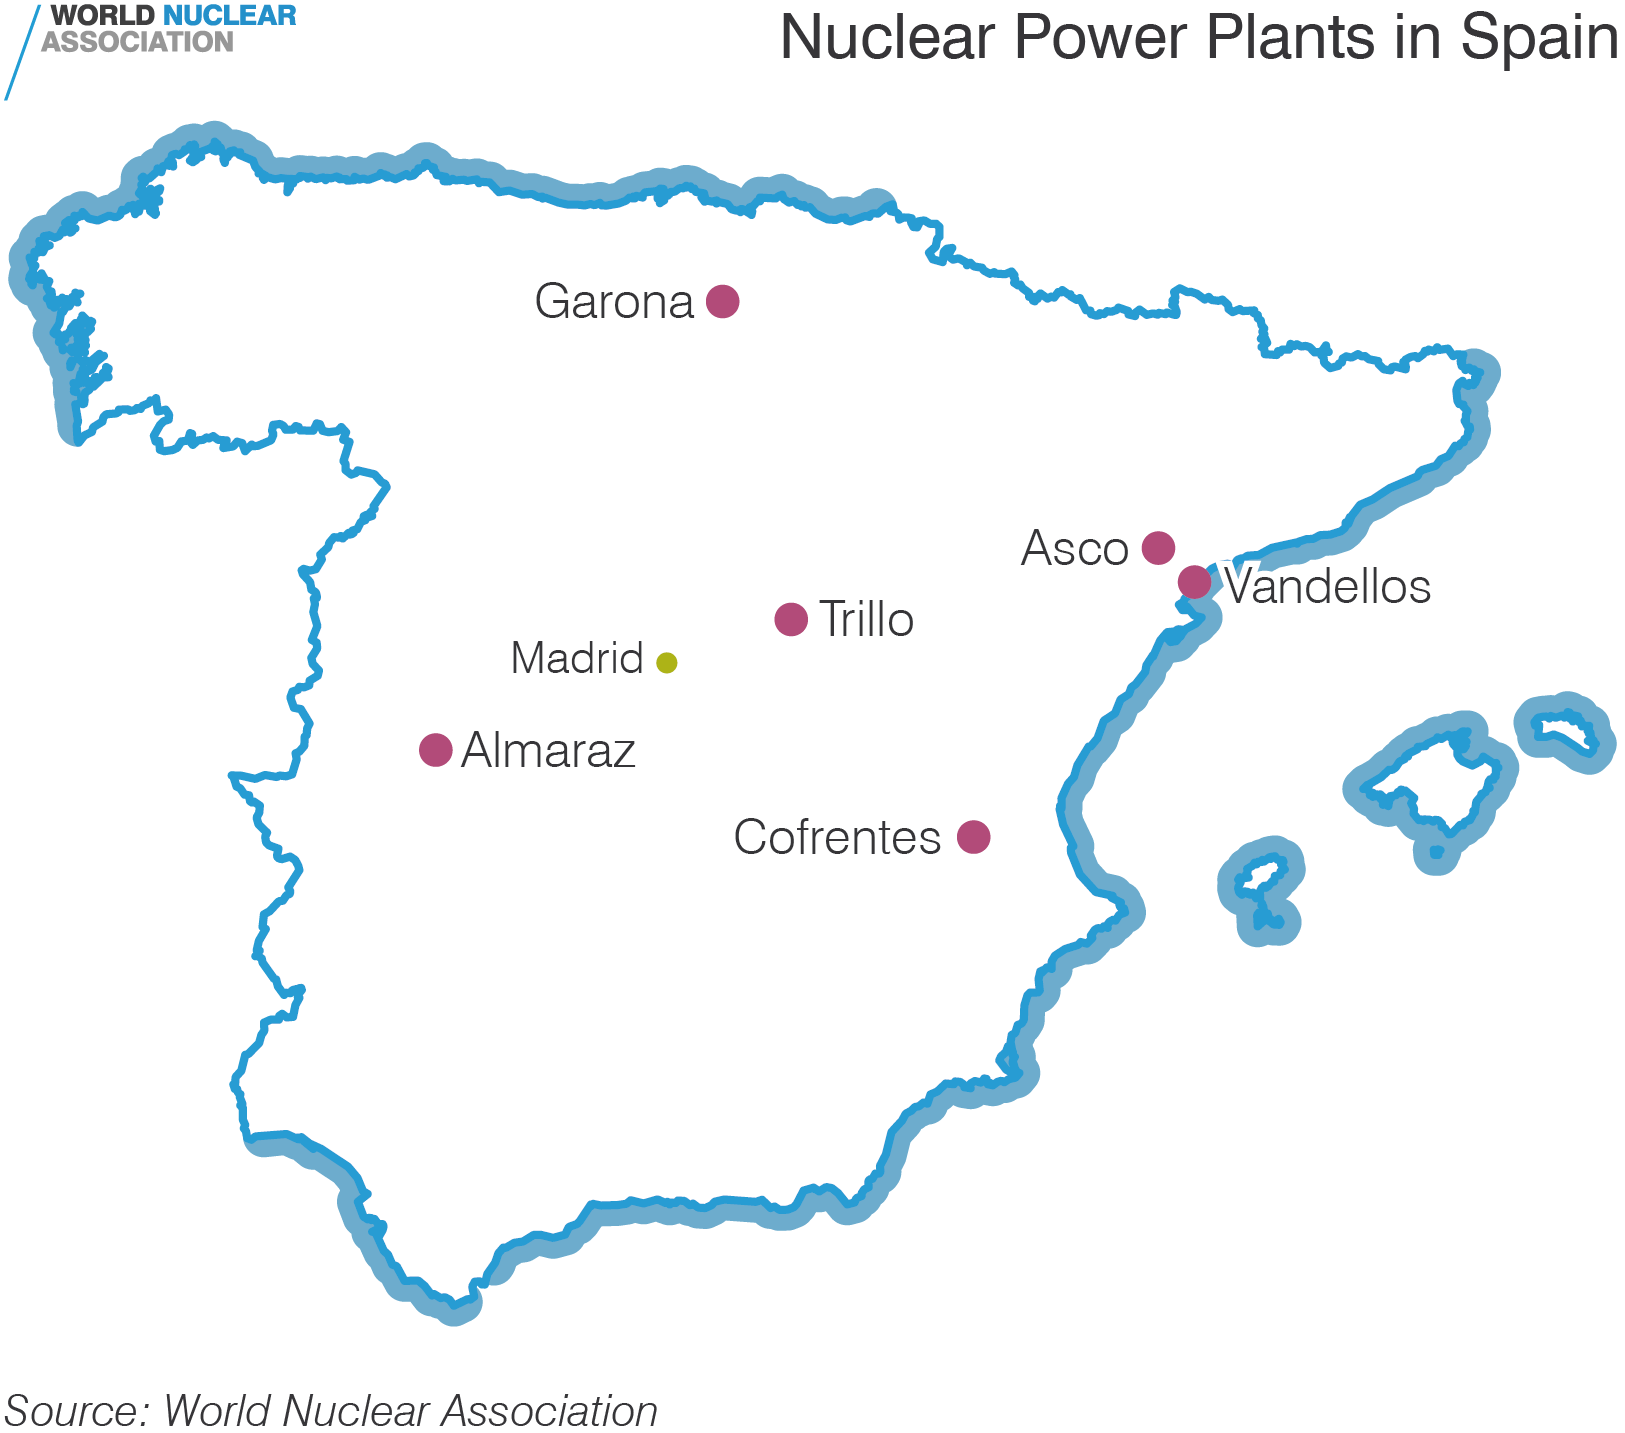 Nuclear Power Plants in Spain